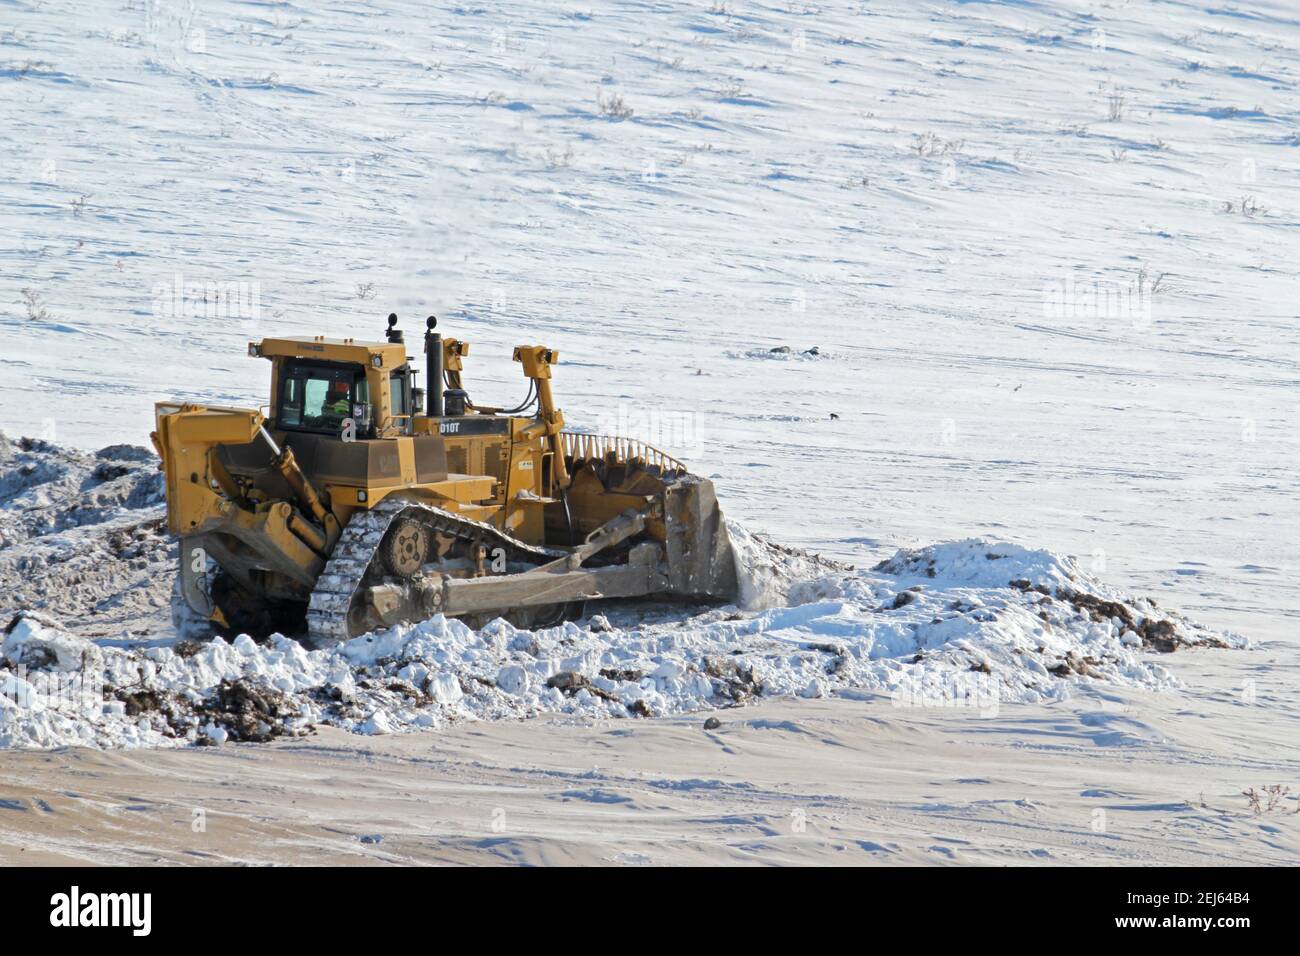 Bulldozer Caterpillar poussant la neige pendant la construction hivernale de la route Inuvik-Tuktoyaktuk, Territoires du Nord-Ouest, Arctique canadien. Banque D'Images